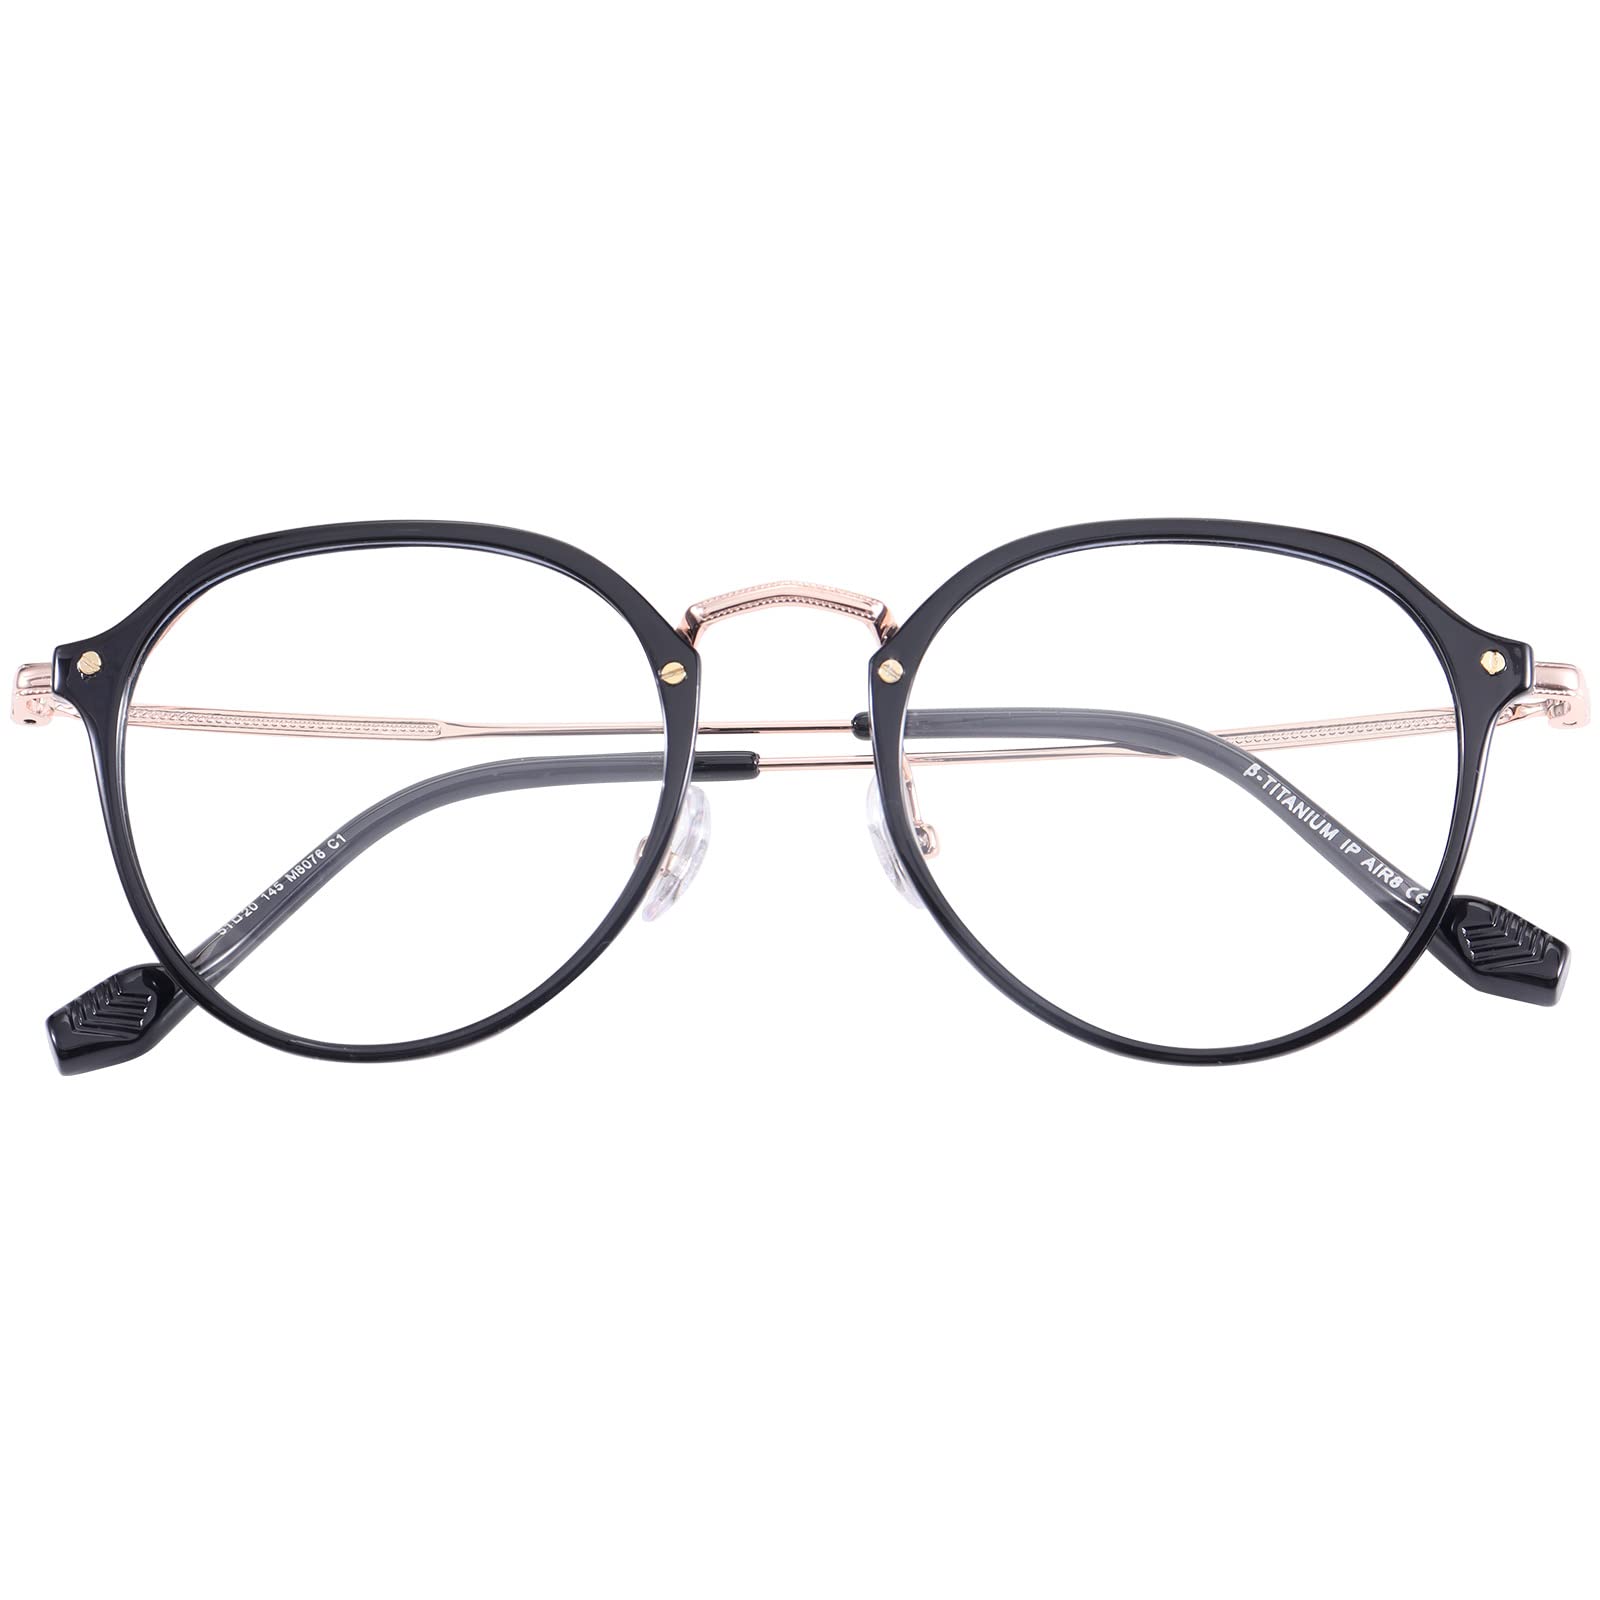 [Dollger] ブルーライトカット メガネ 伊達メガネ 度なし ブルーライトカット 眼鏡 だてめがね おしゃれ 18g超軽量 PCメガネ 丸メガネ 紫外線カット UVカット ファッション レディース メンズ ブラック・ローズゴールド